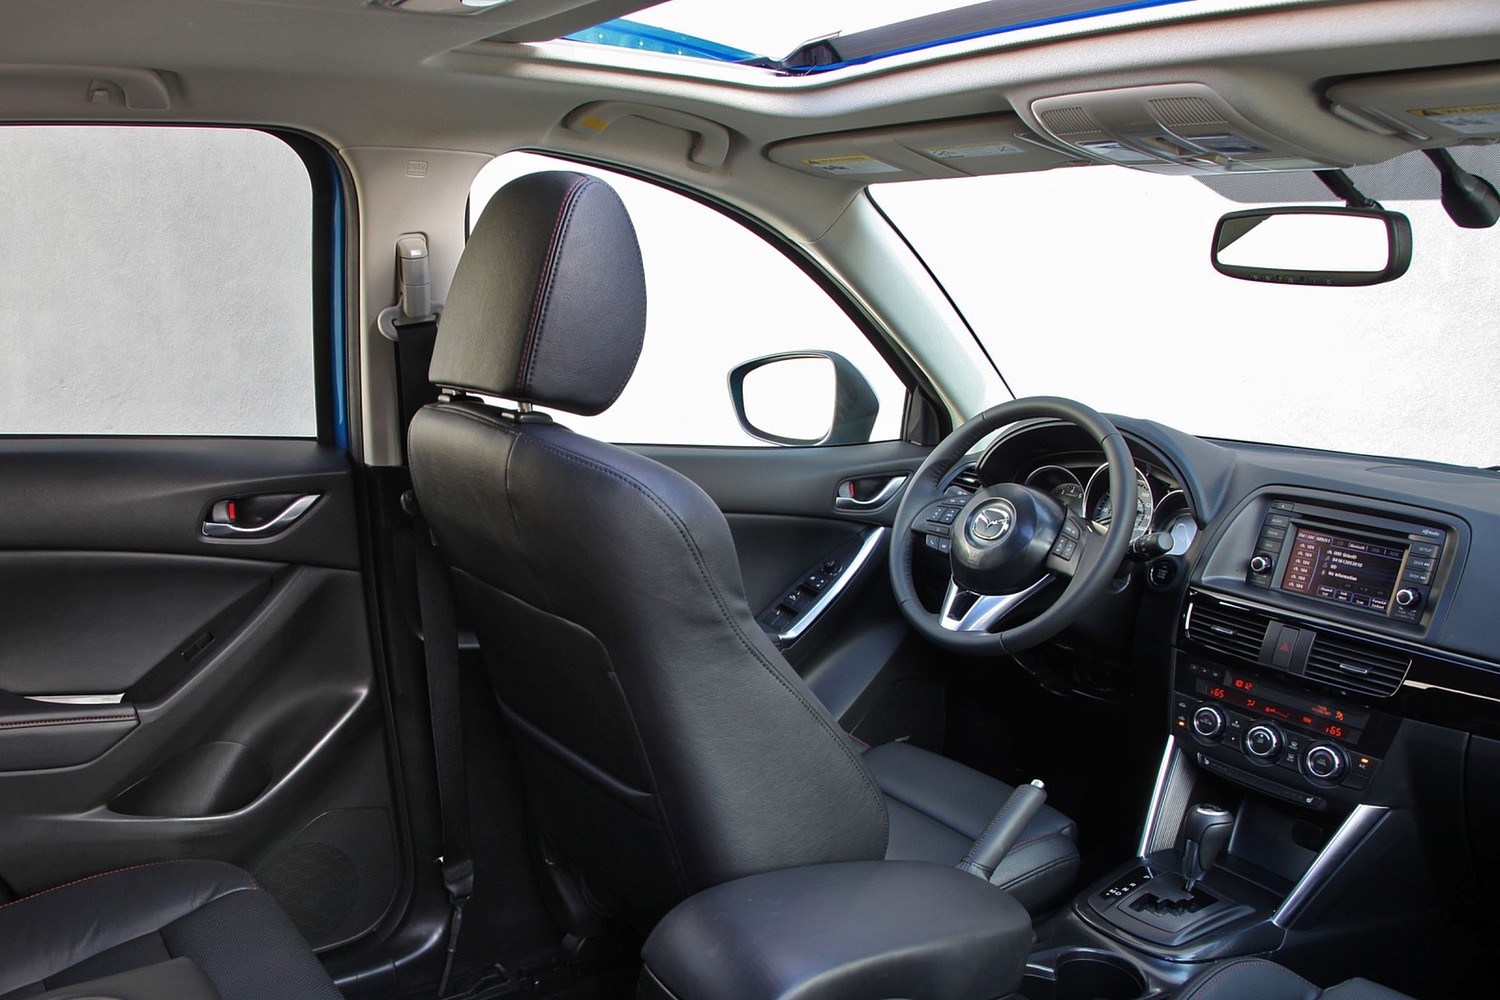 Mazda CX-5 Grand Touring 4dr SUV Interior (2013 model year shown)